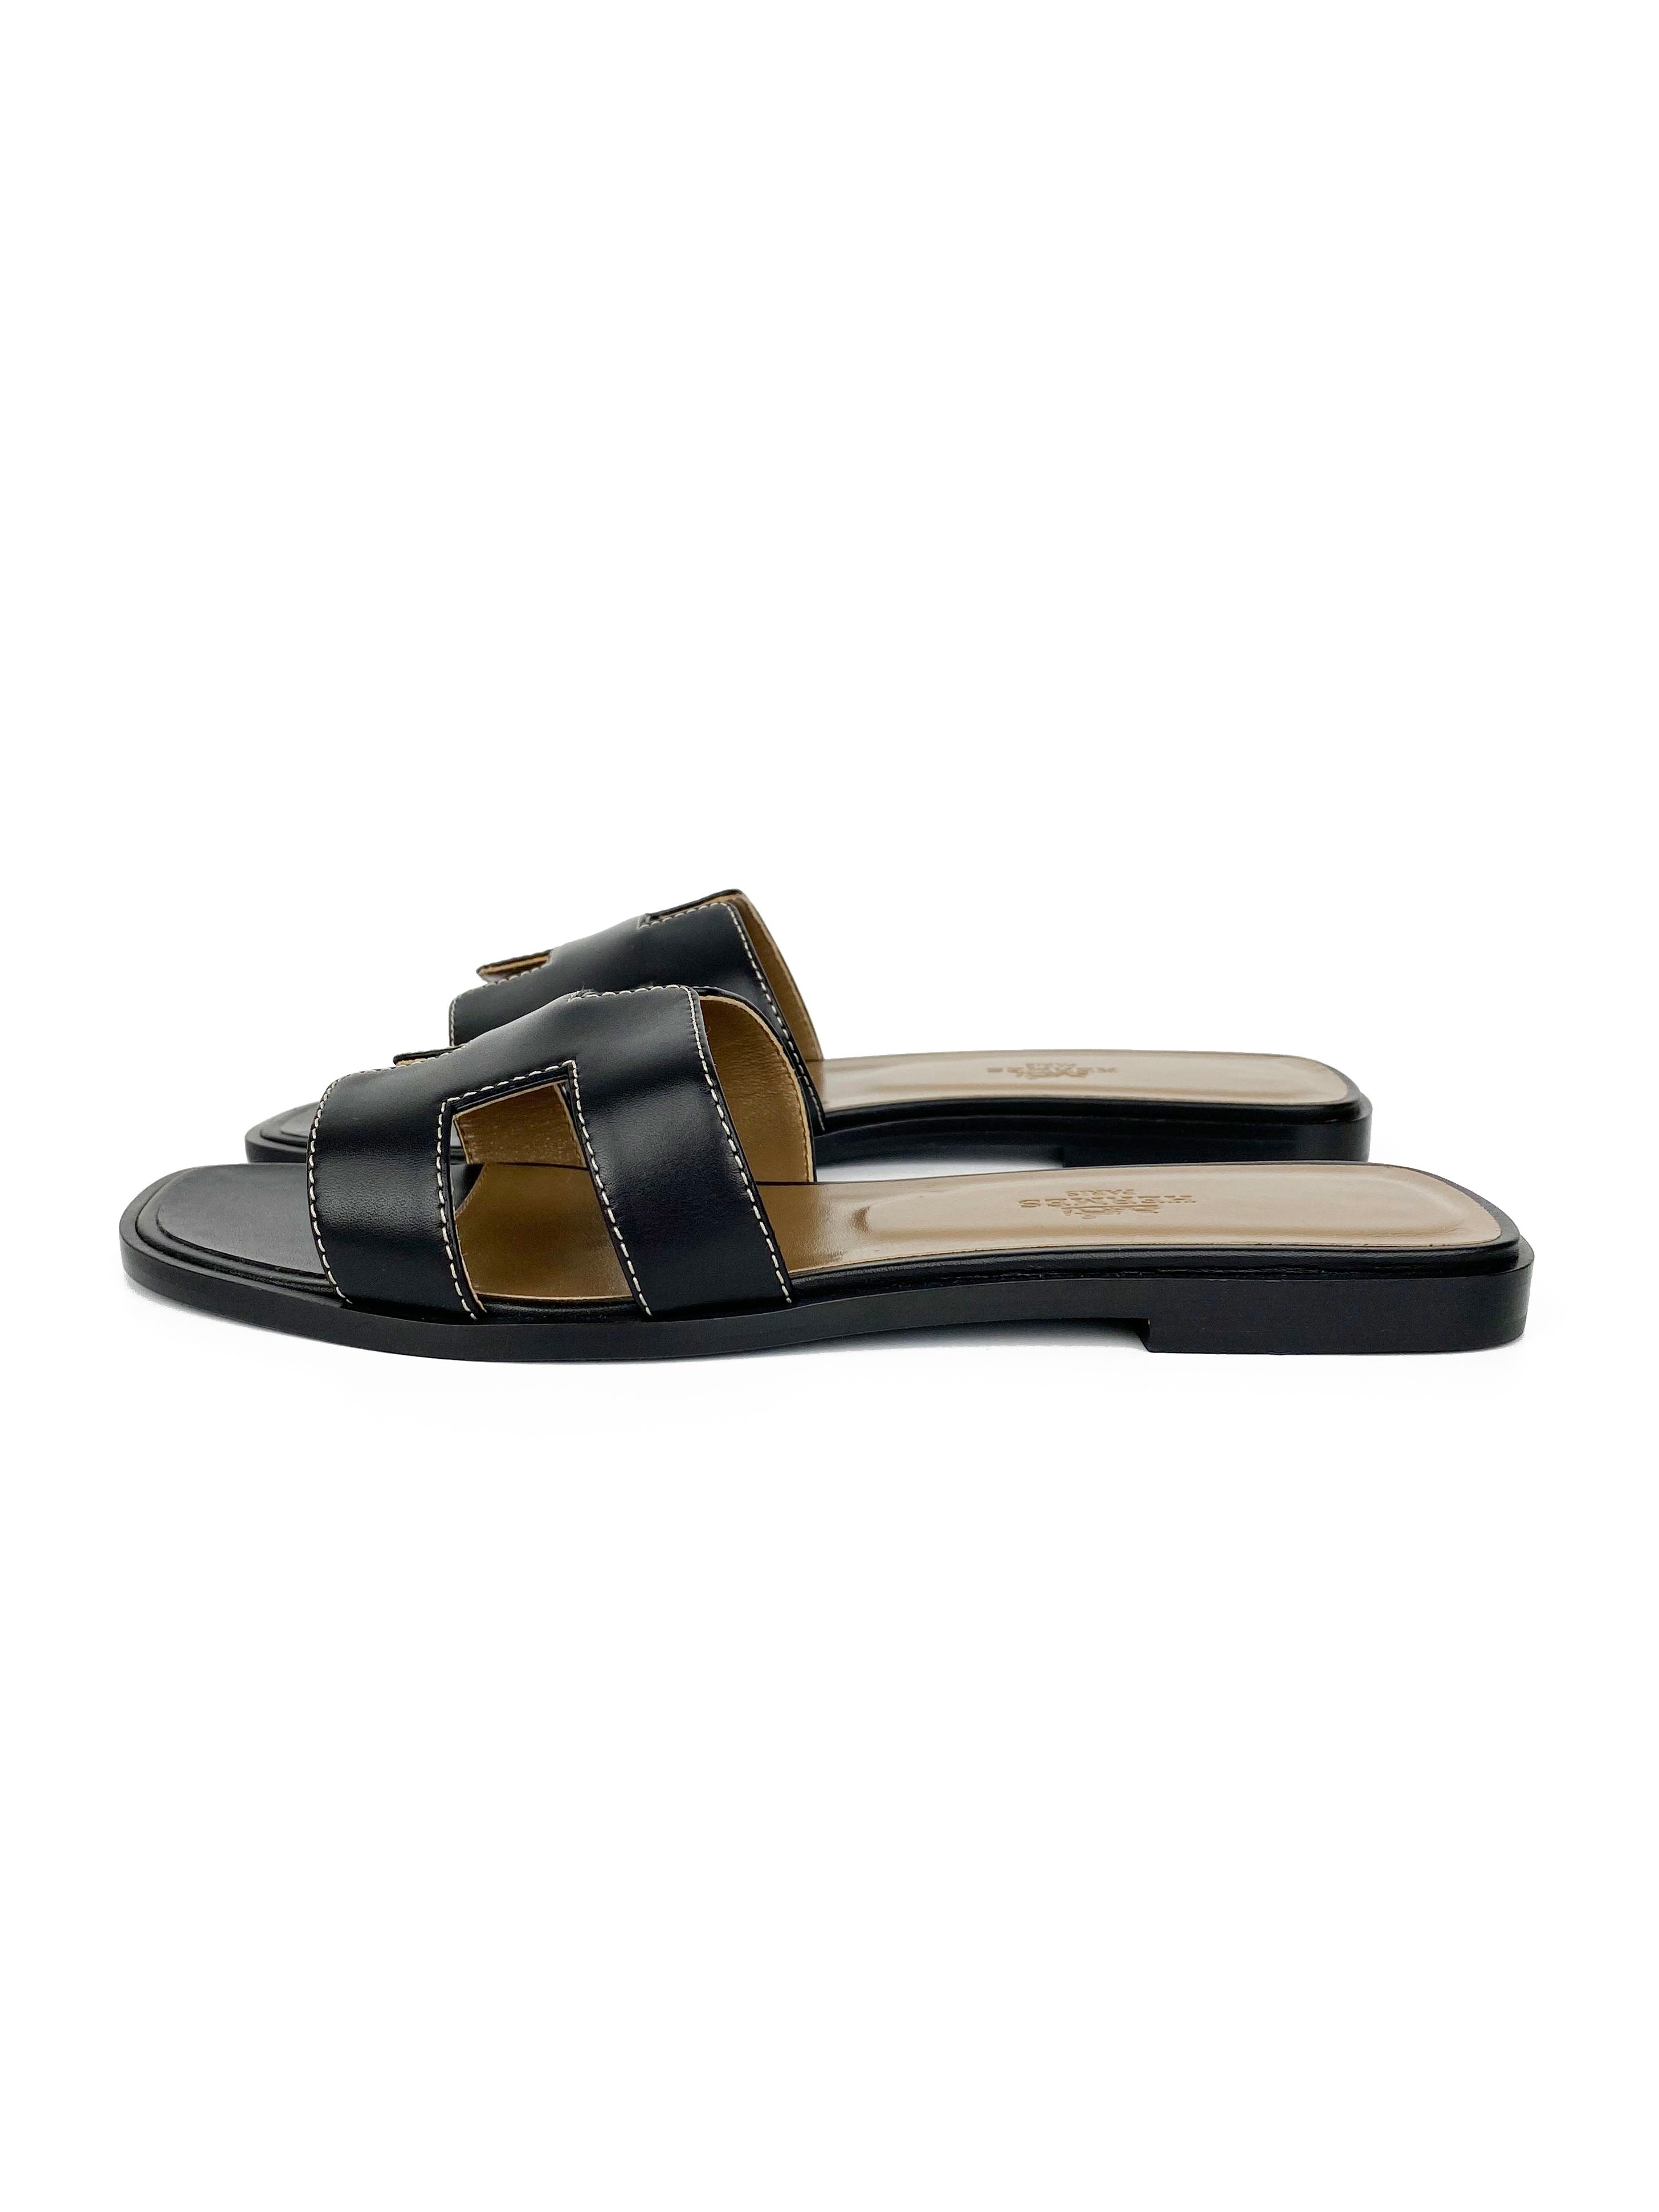 Hermes Black Oran Sandals 37.5